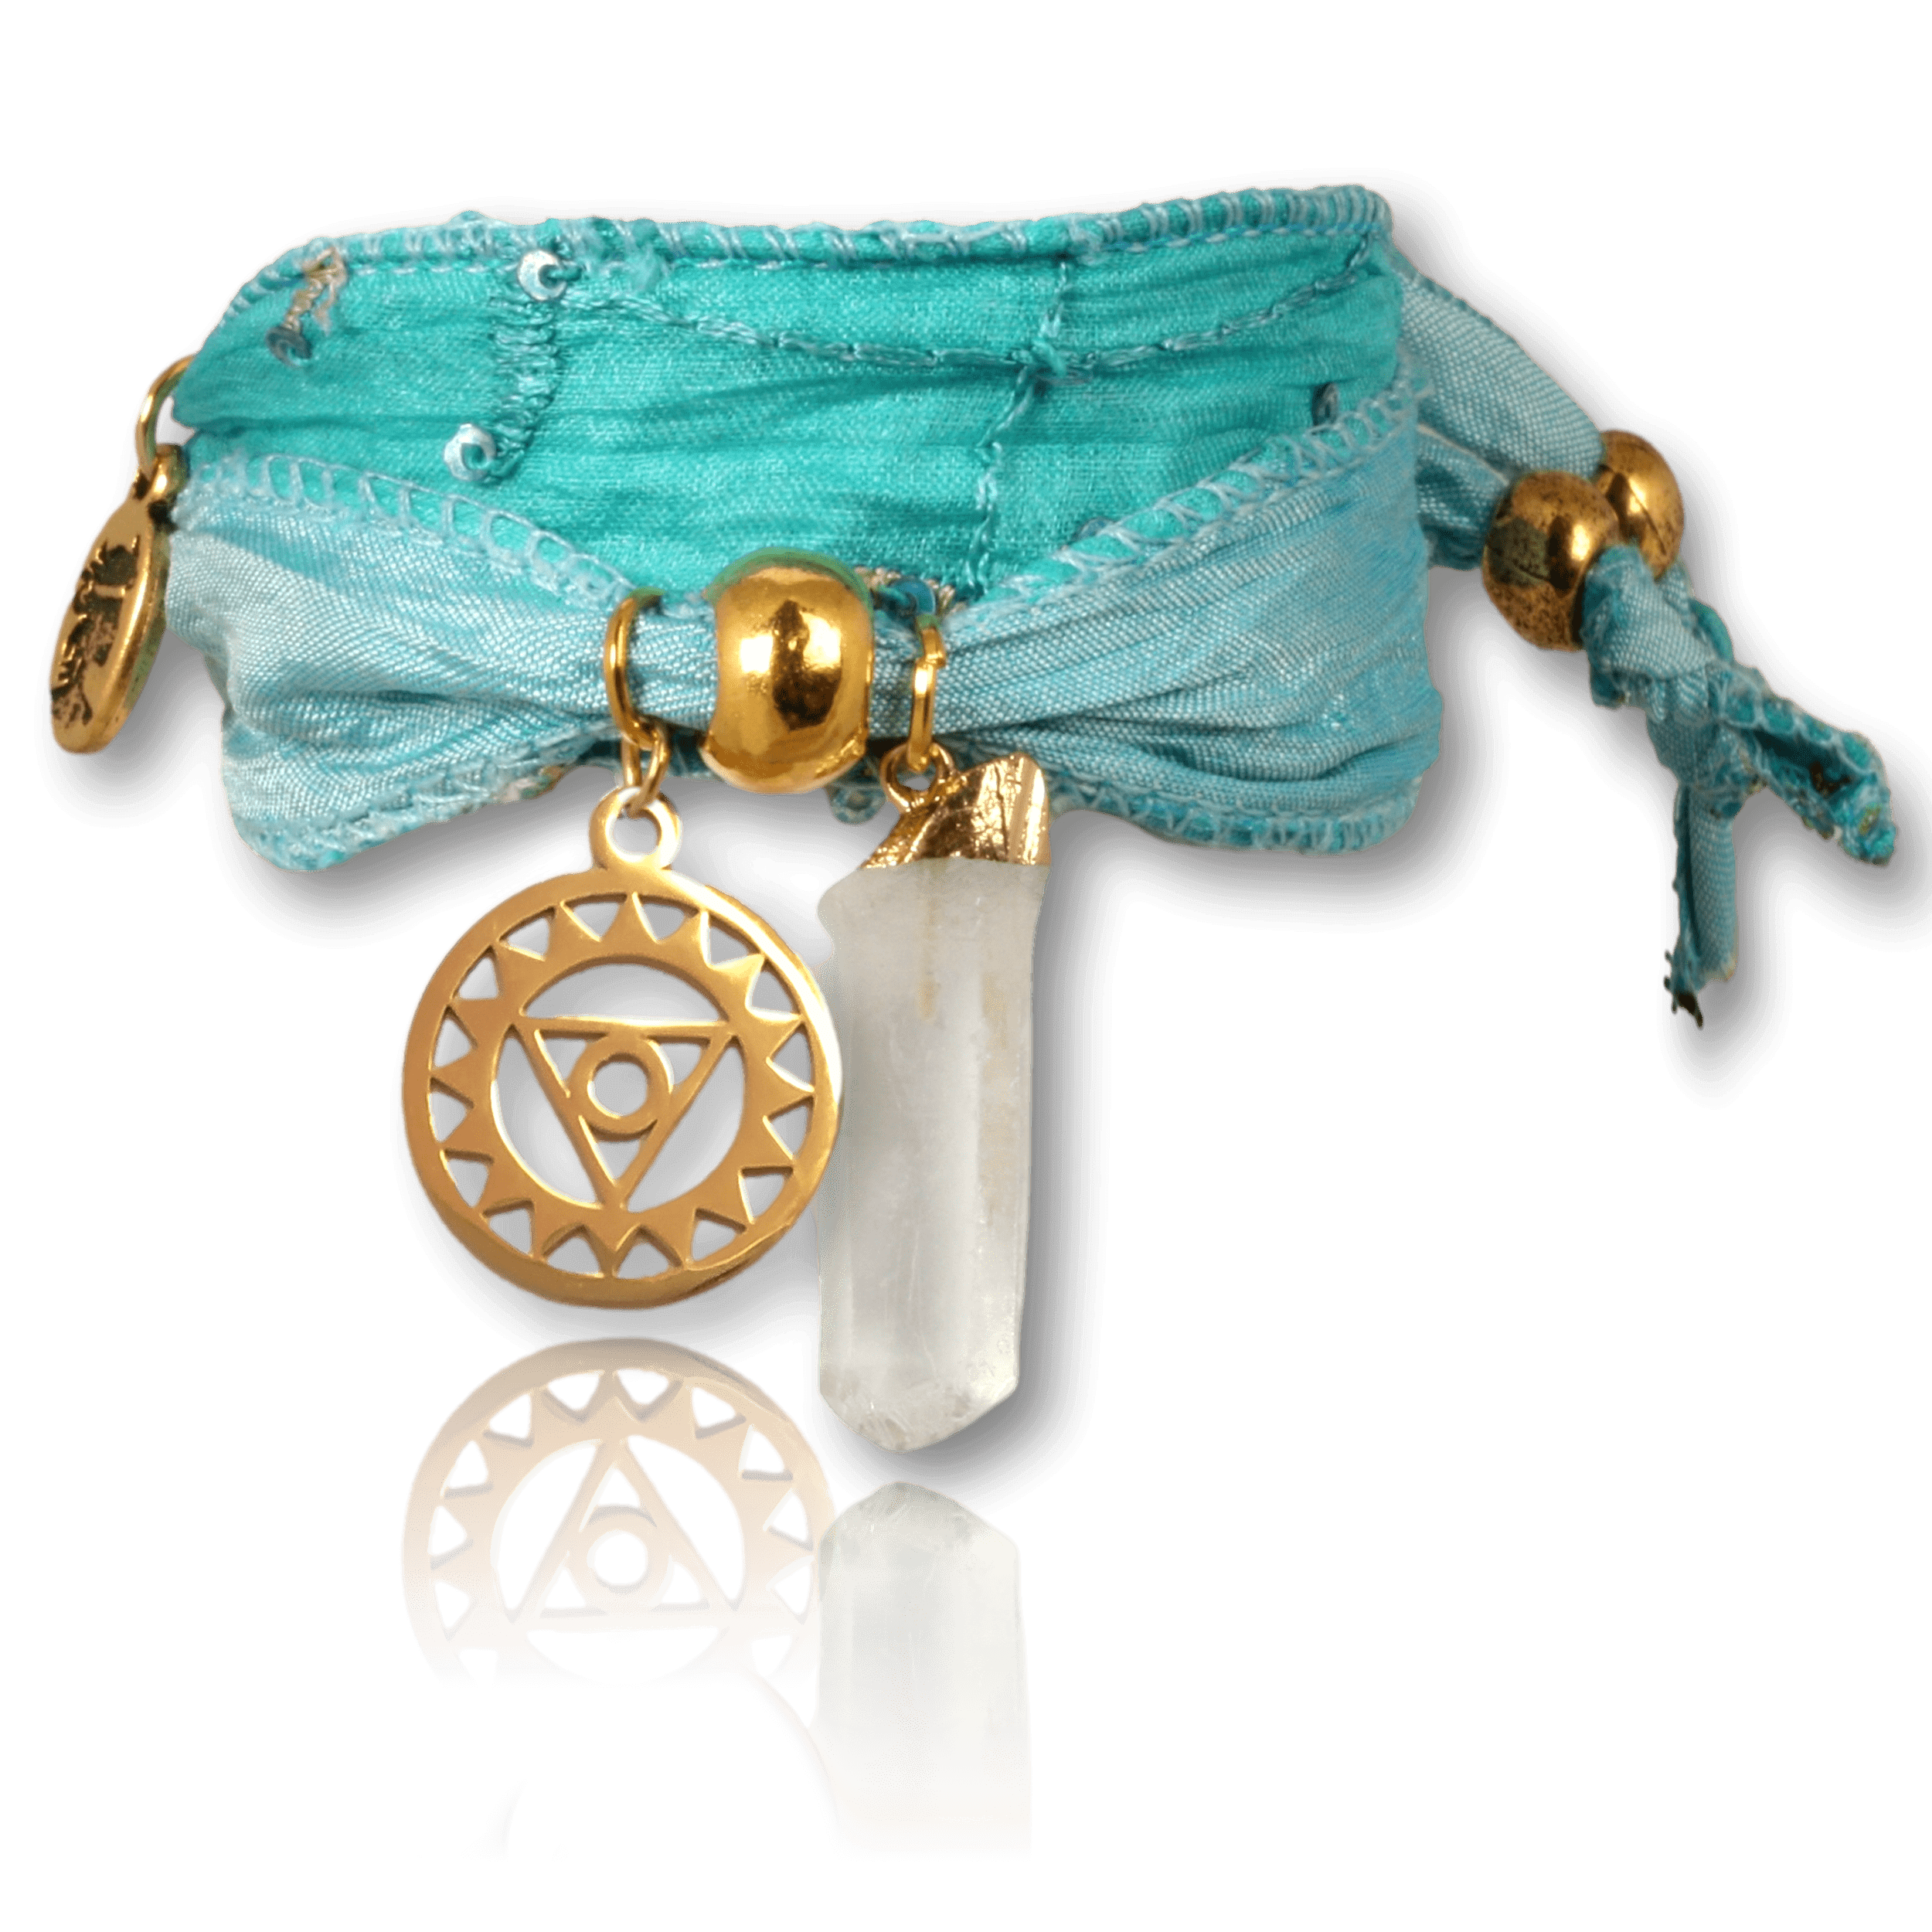 Vishudda vergoldet mit Bergkristall Hexagon – Halschakra Armband für Wahrheit & Authentizität